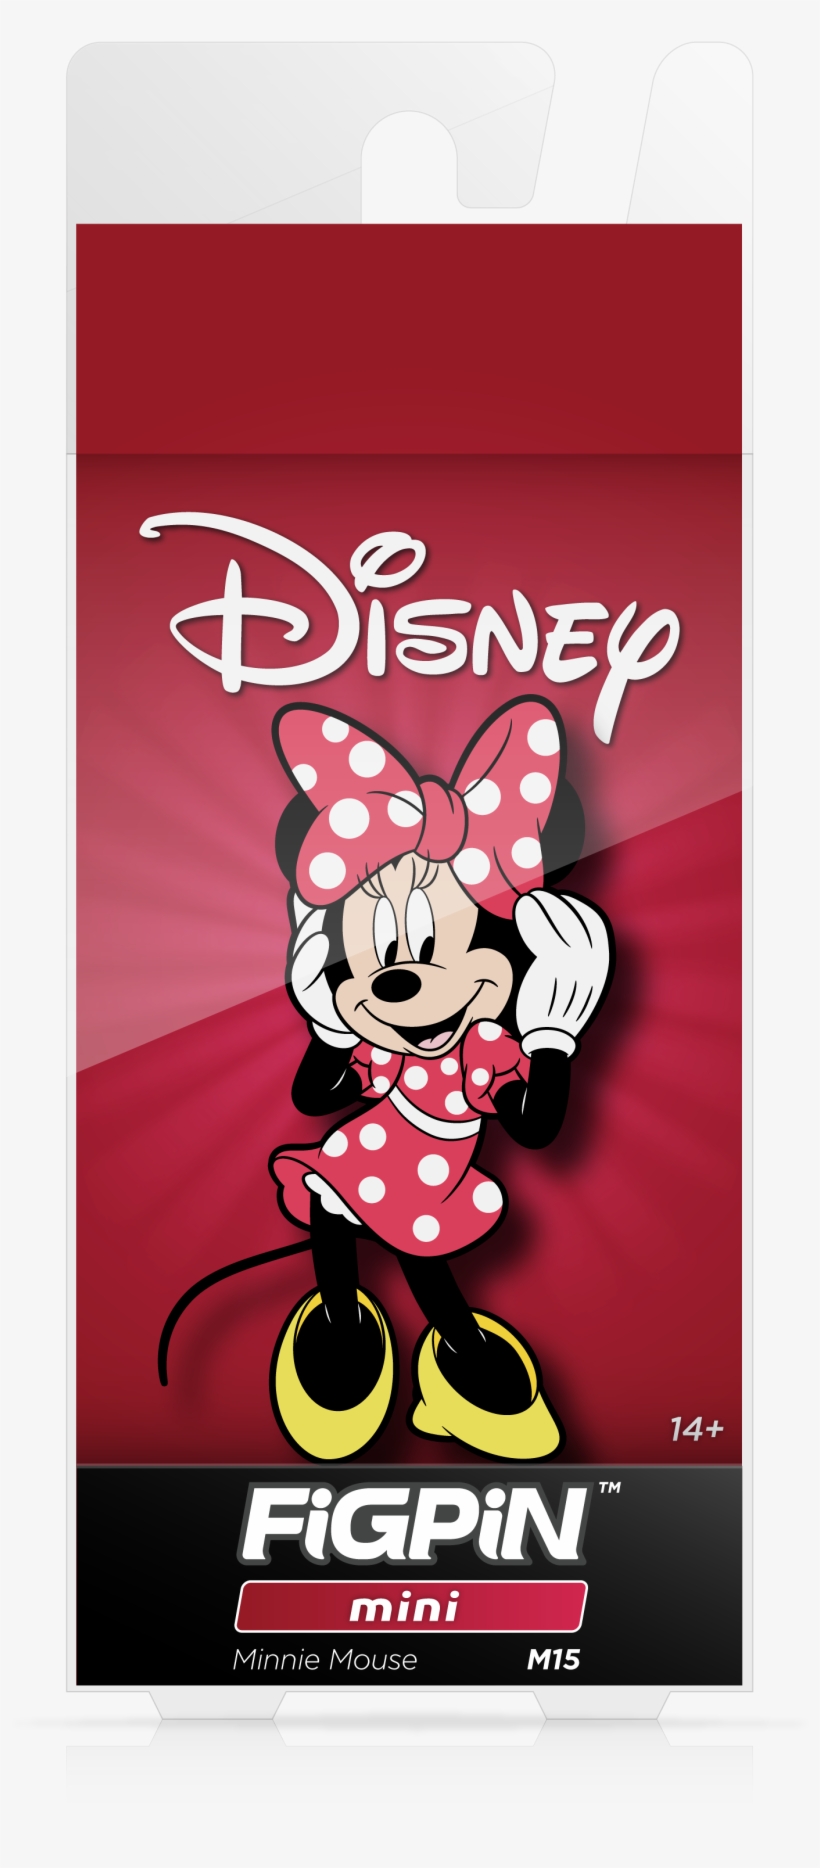 Minnie Mouse - Minnie Mouse Bow-tique 3d Pop Up Play Scape Tent, transparent png #5925799